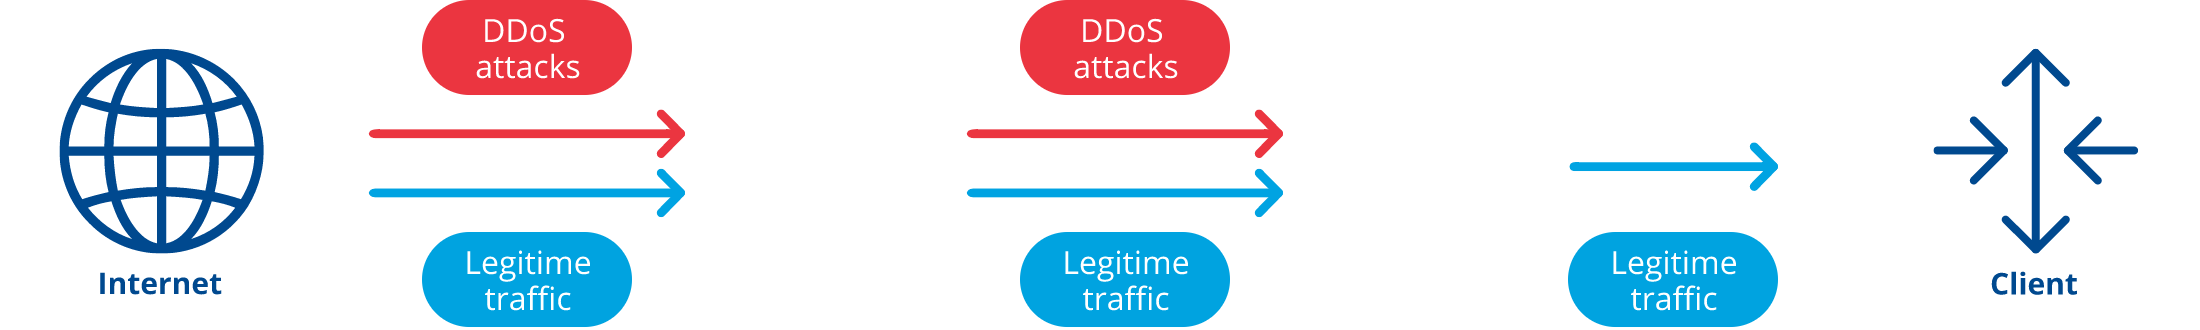 DDoS-Schema